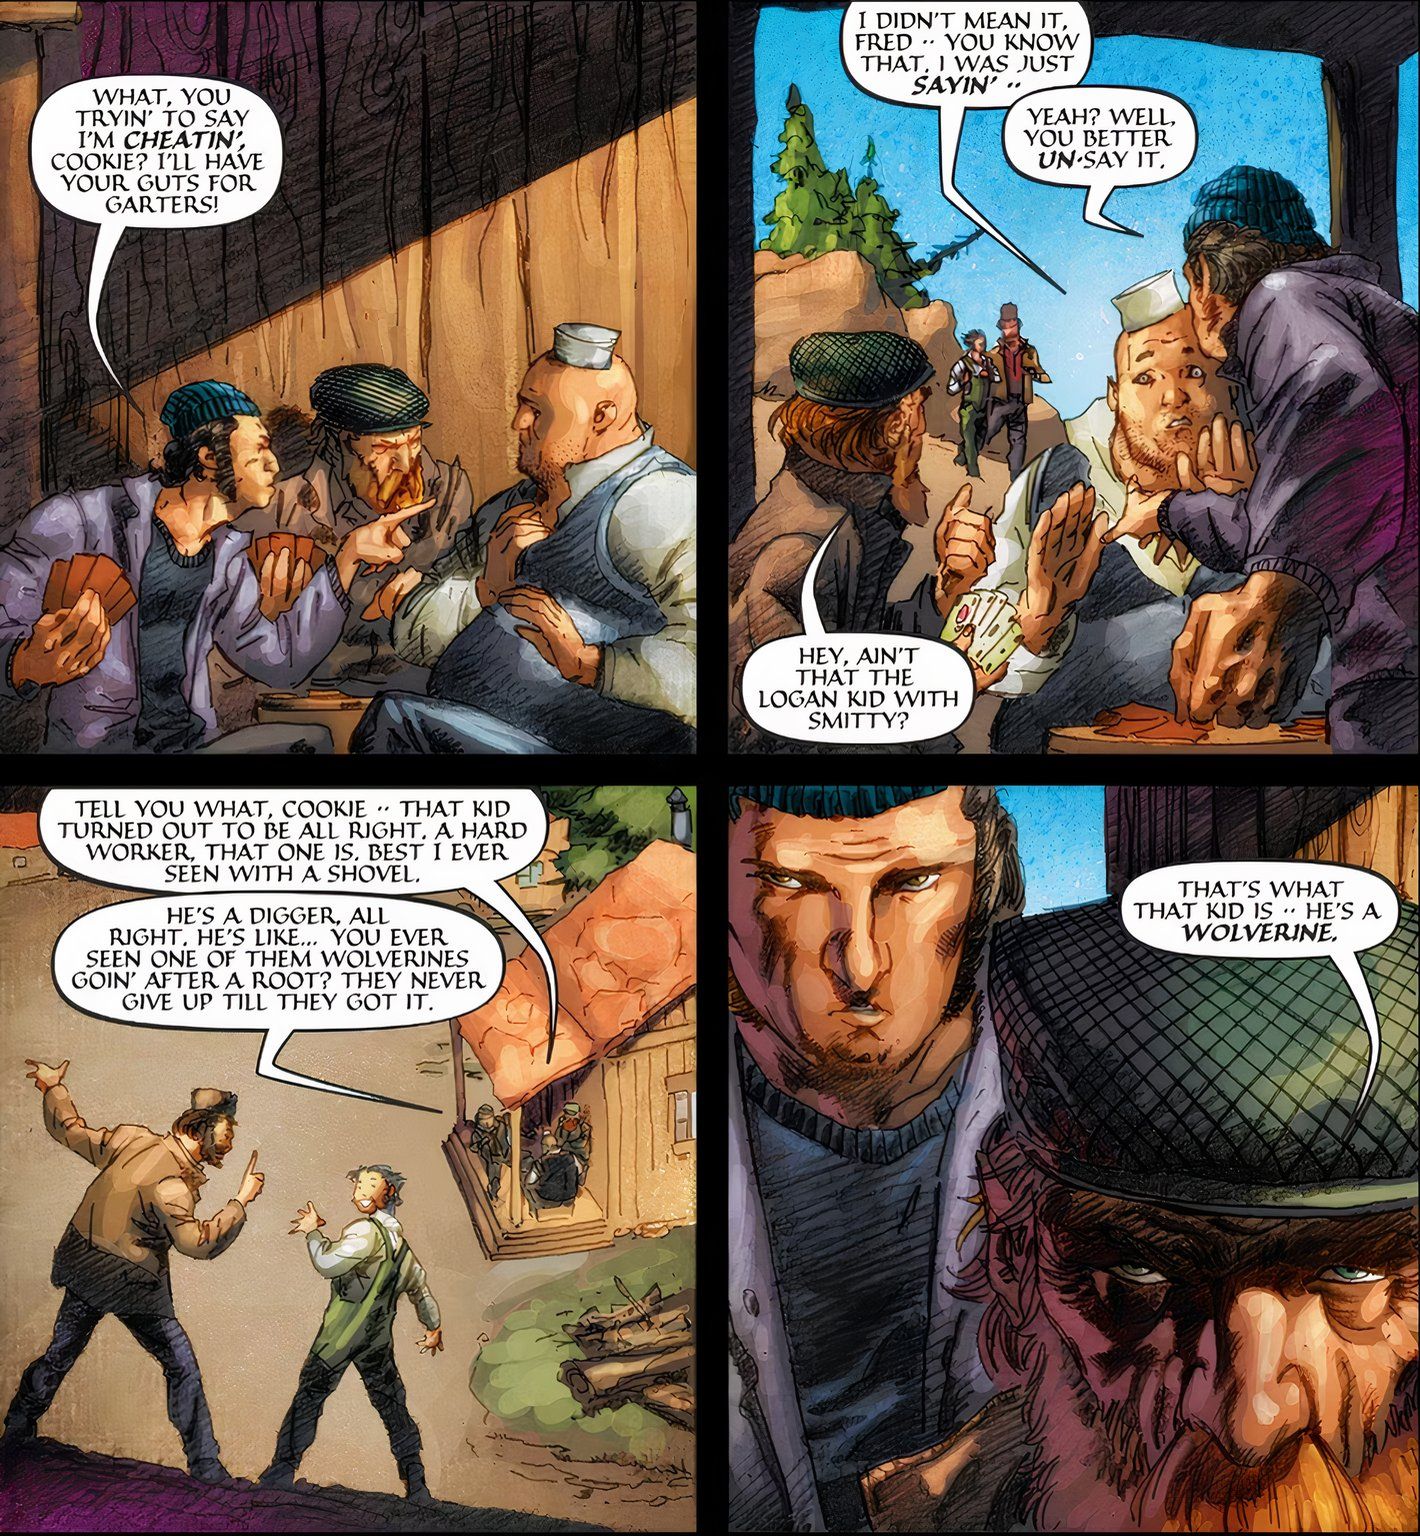 Logan recebe o apelido de "Wolverine" de seus colegas de trabalho em uma pedreira.